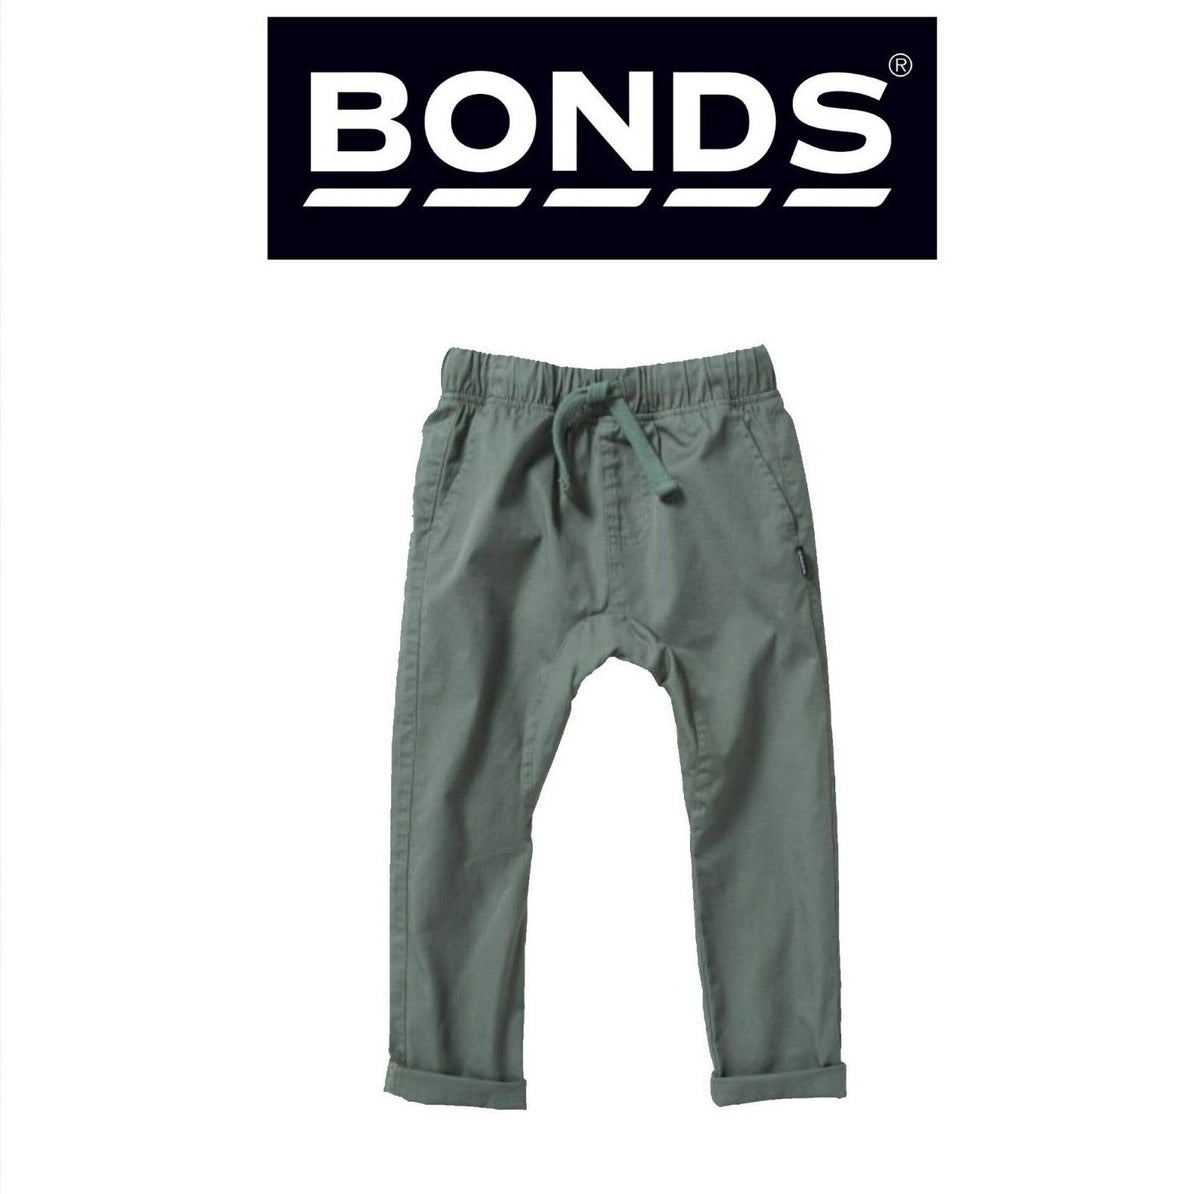 Bonds Kids Next Gen Cargo Pants Super Soft Waistband with Pockets KY9CK